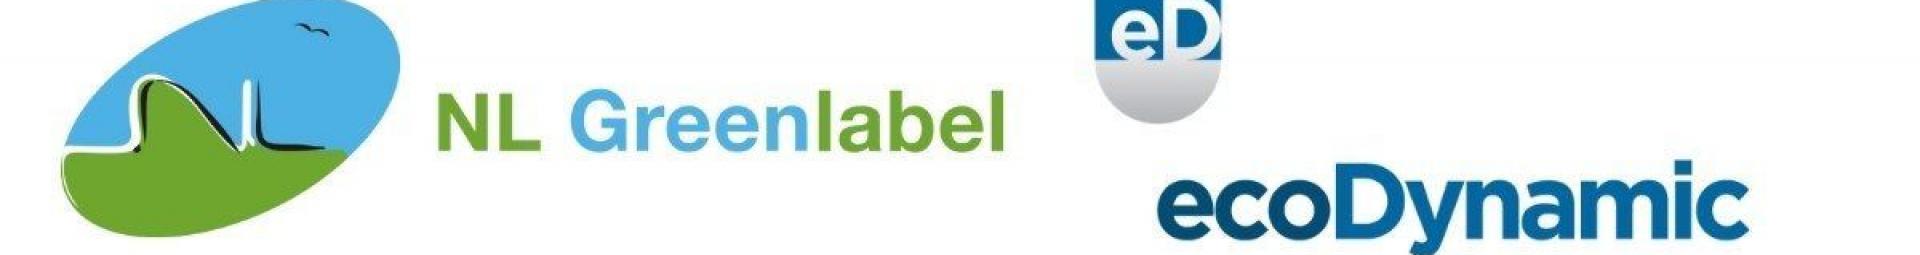 NL Greenlabel bestaat 10 jaar